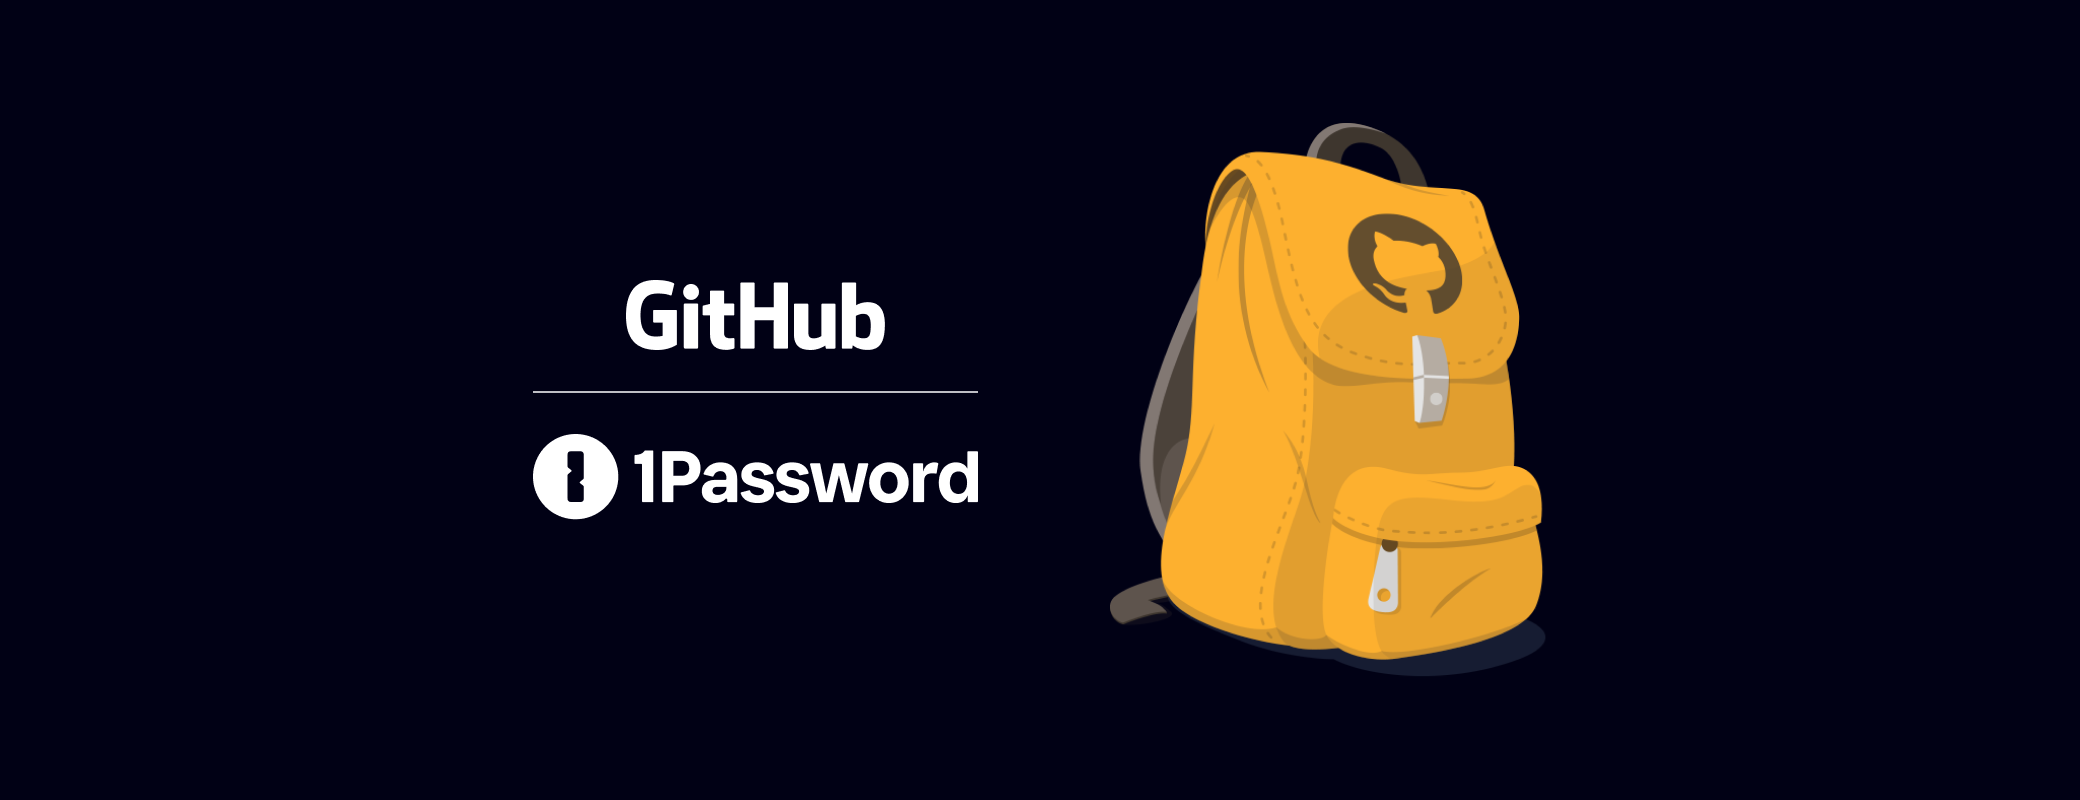 1Password Developer Tools joins the GitHub Student Developer Pack